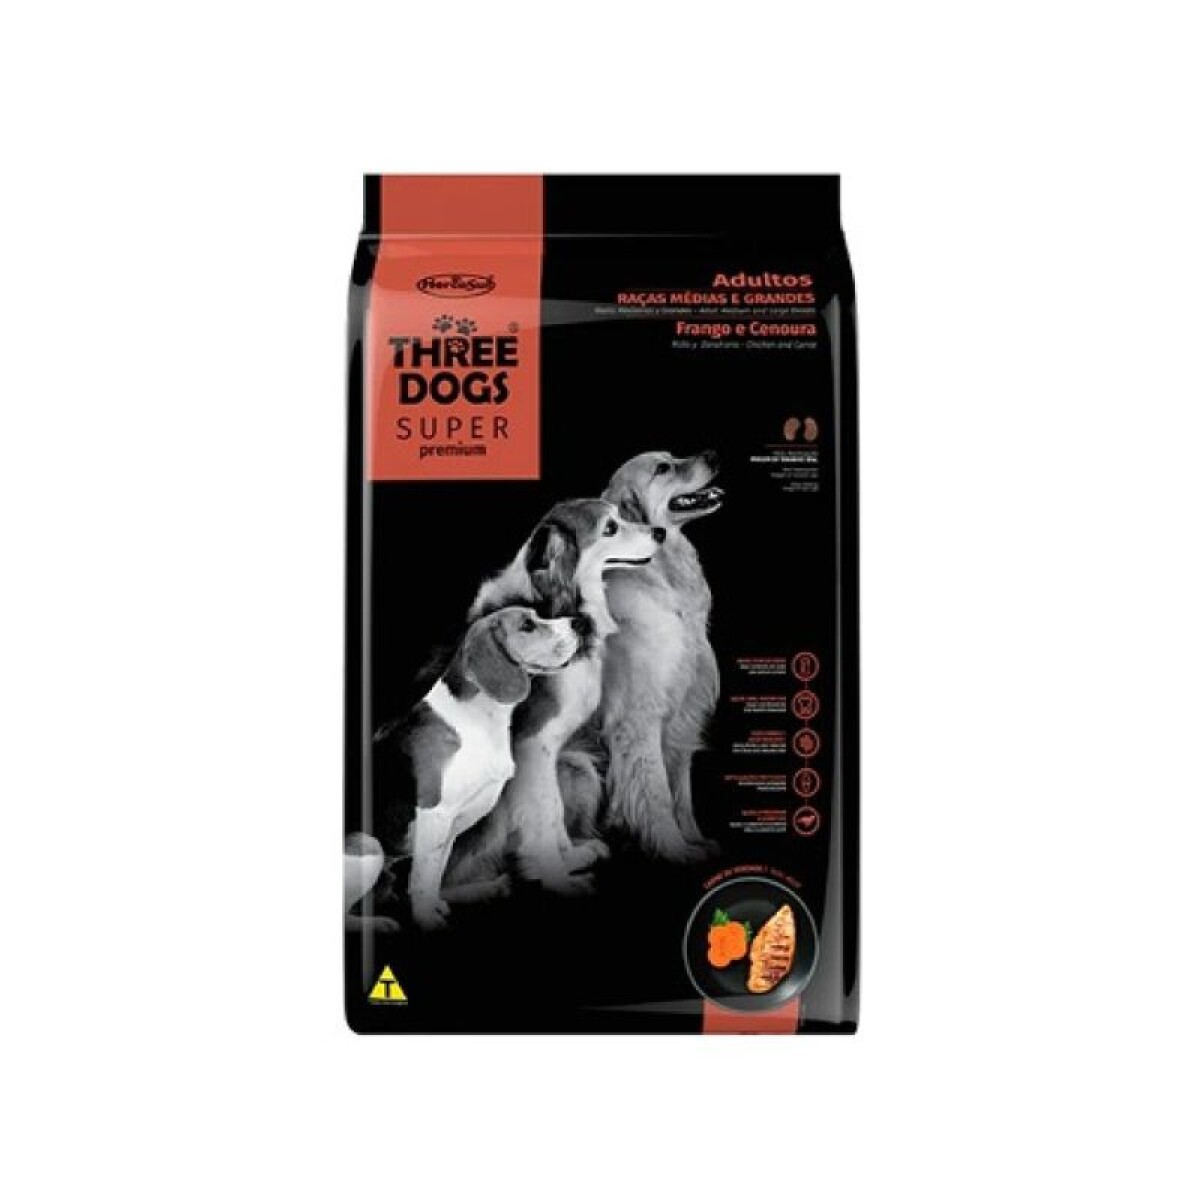 THREE DOGS SUPER PREMIUM ADULTOS MED/GDES 17KG - Three Dogs Super Premium Adultos Med/gdes 17kg 